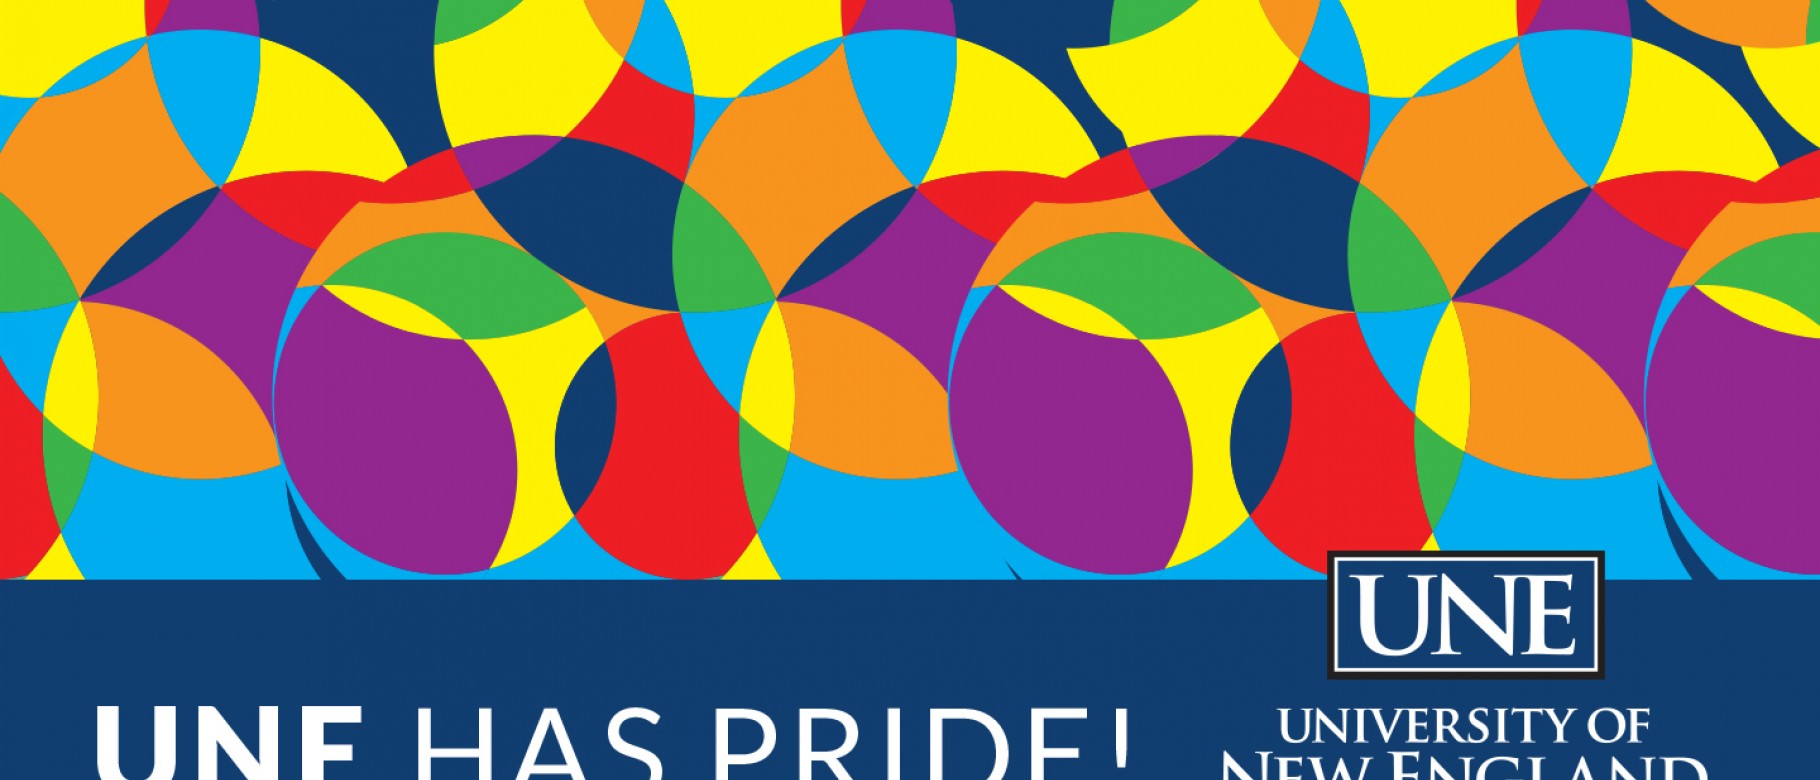 UNE's Pride Portland logo